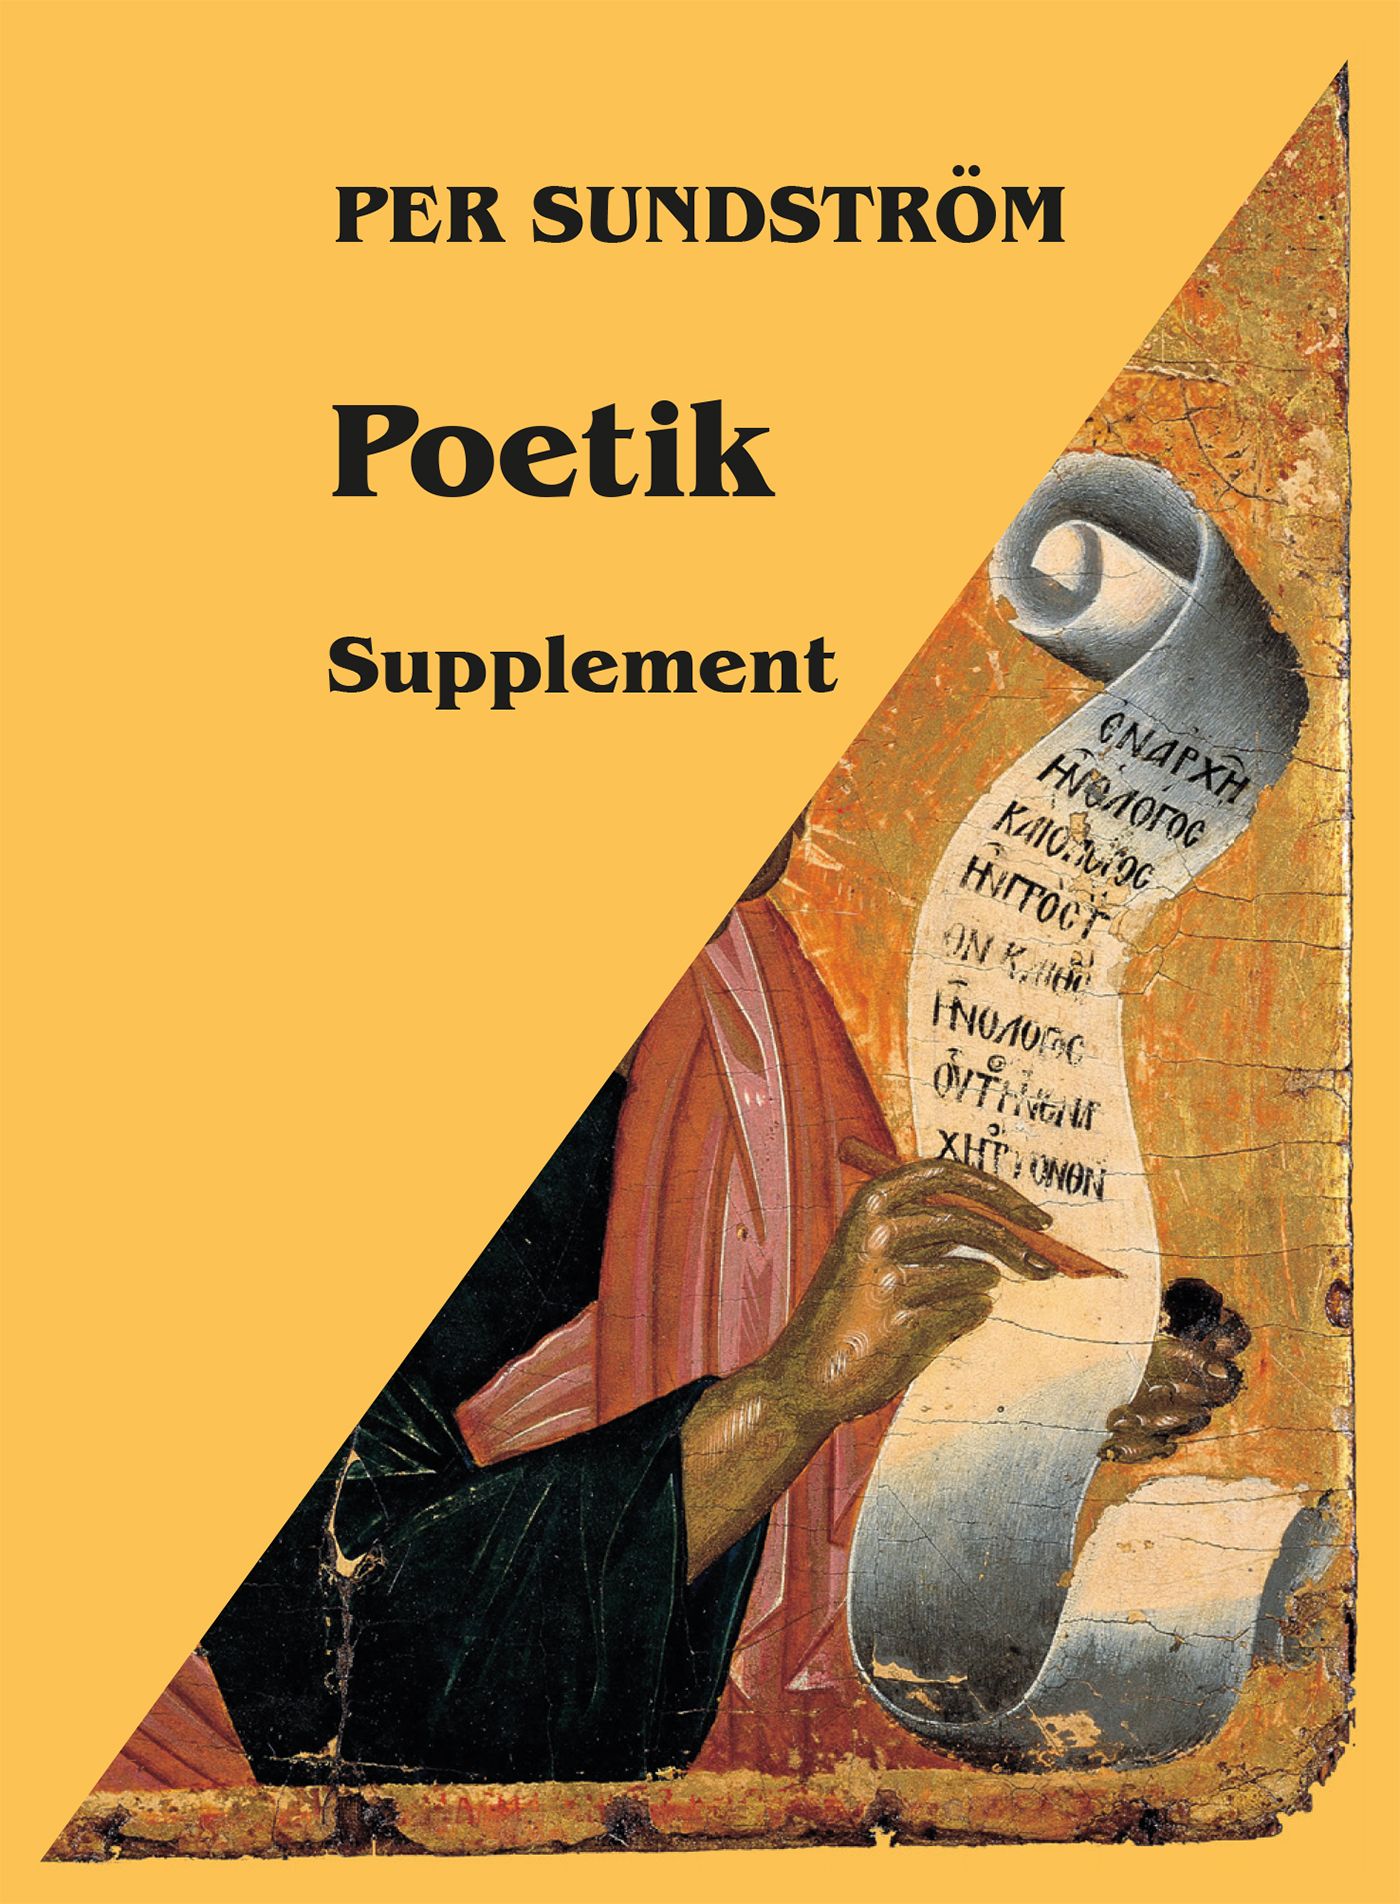 Poetik : Supplement, e-bog af Per Sundström